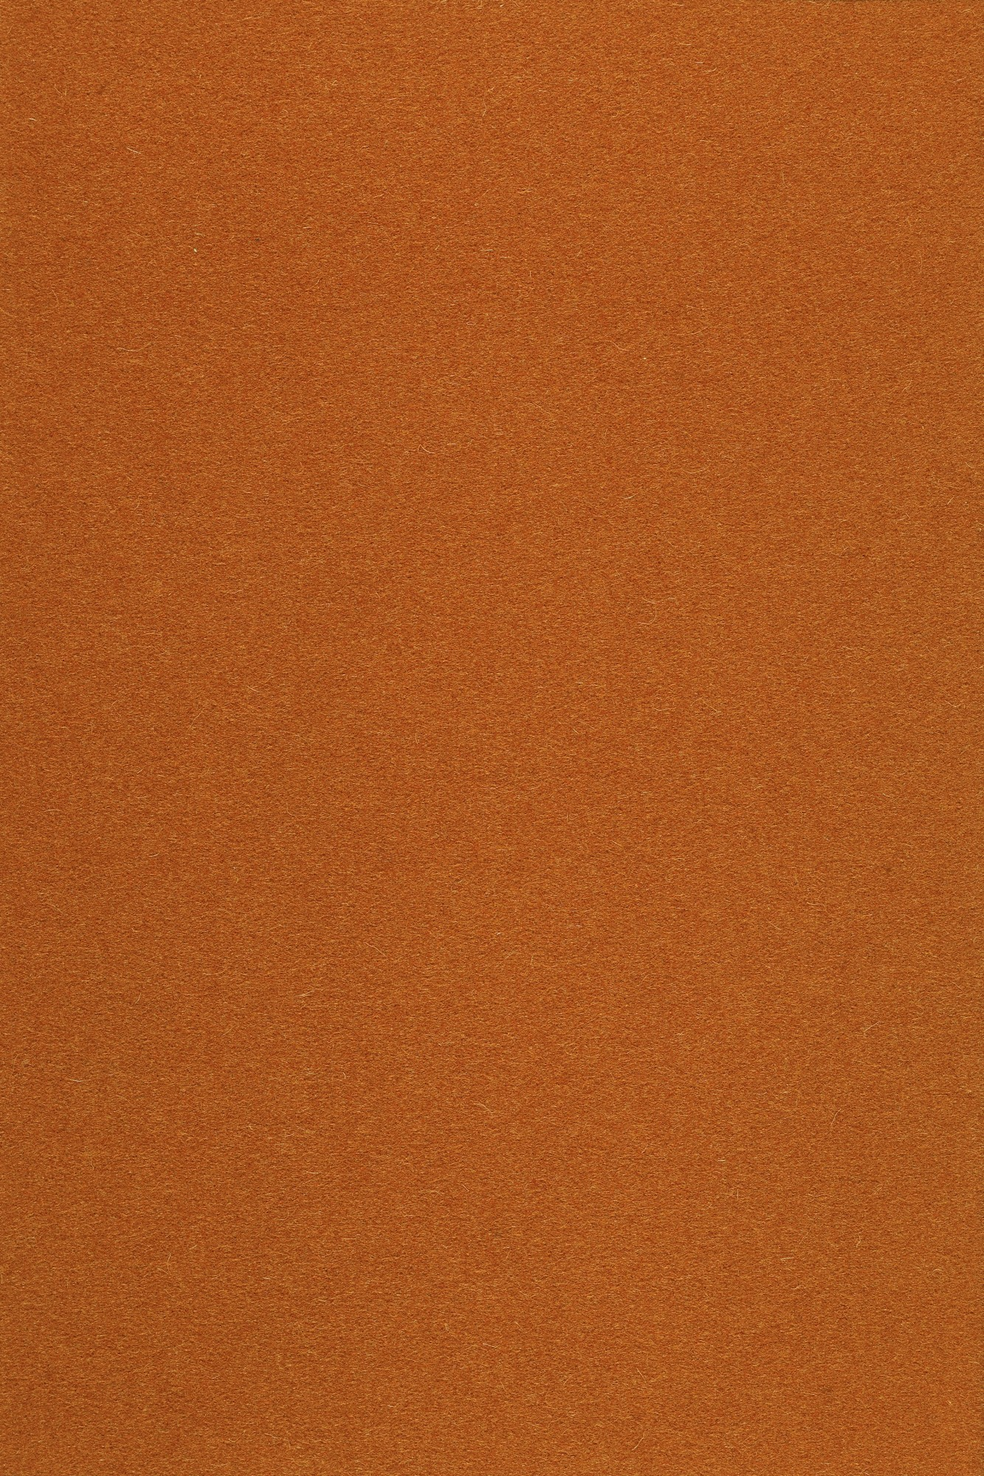 Fabric sample Divina 3 552 orange